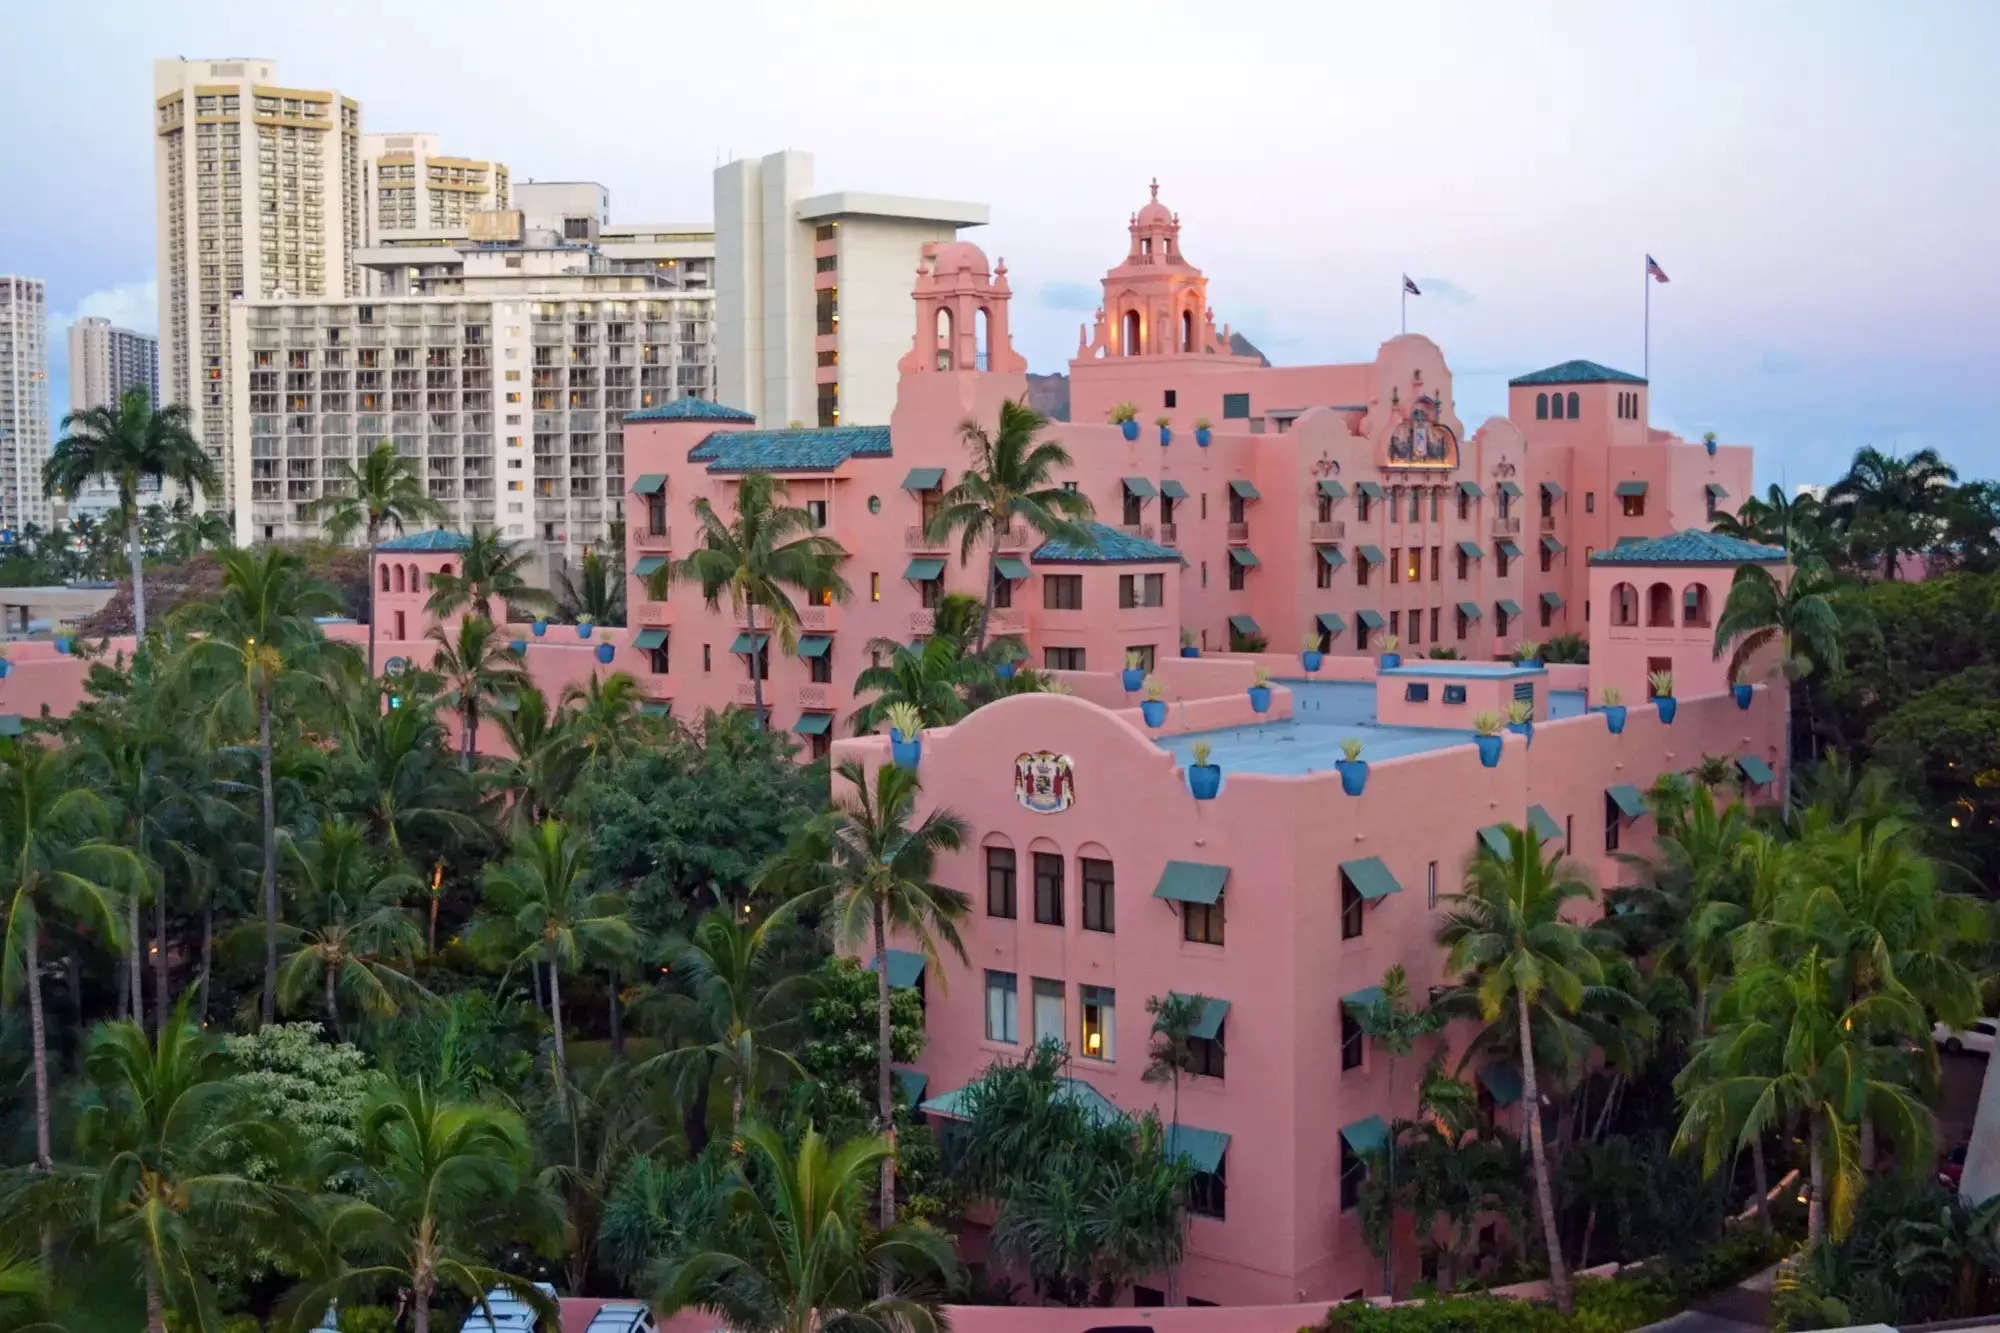 A photo of The Royal Hawaiian hotel in Hawaii.